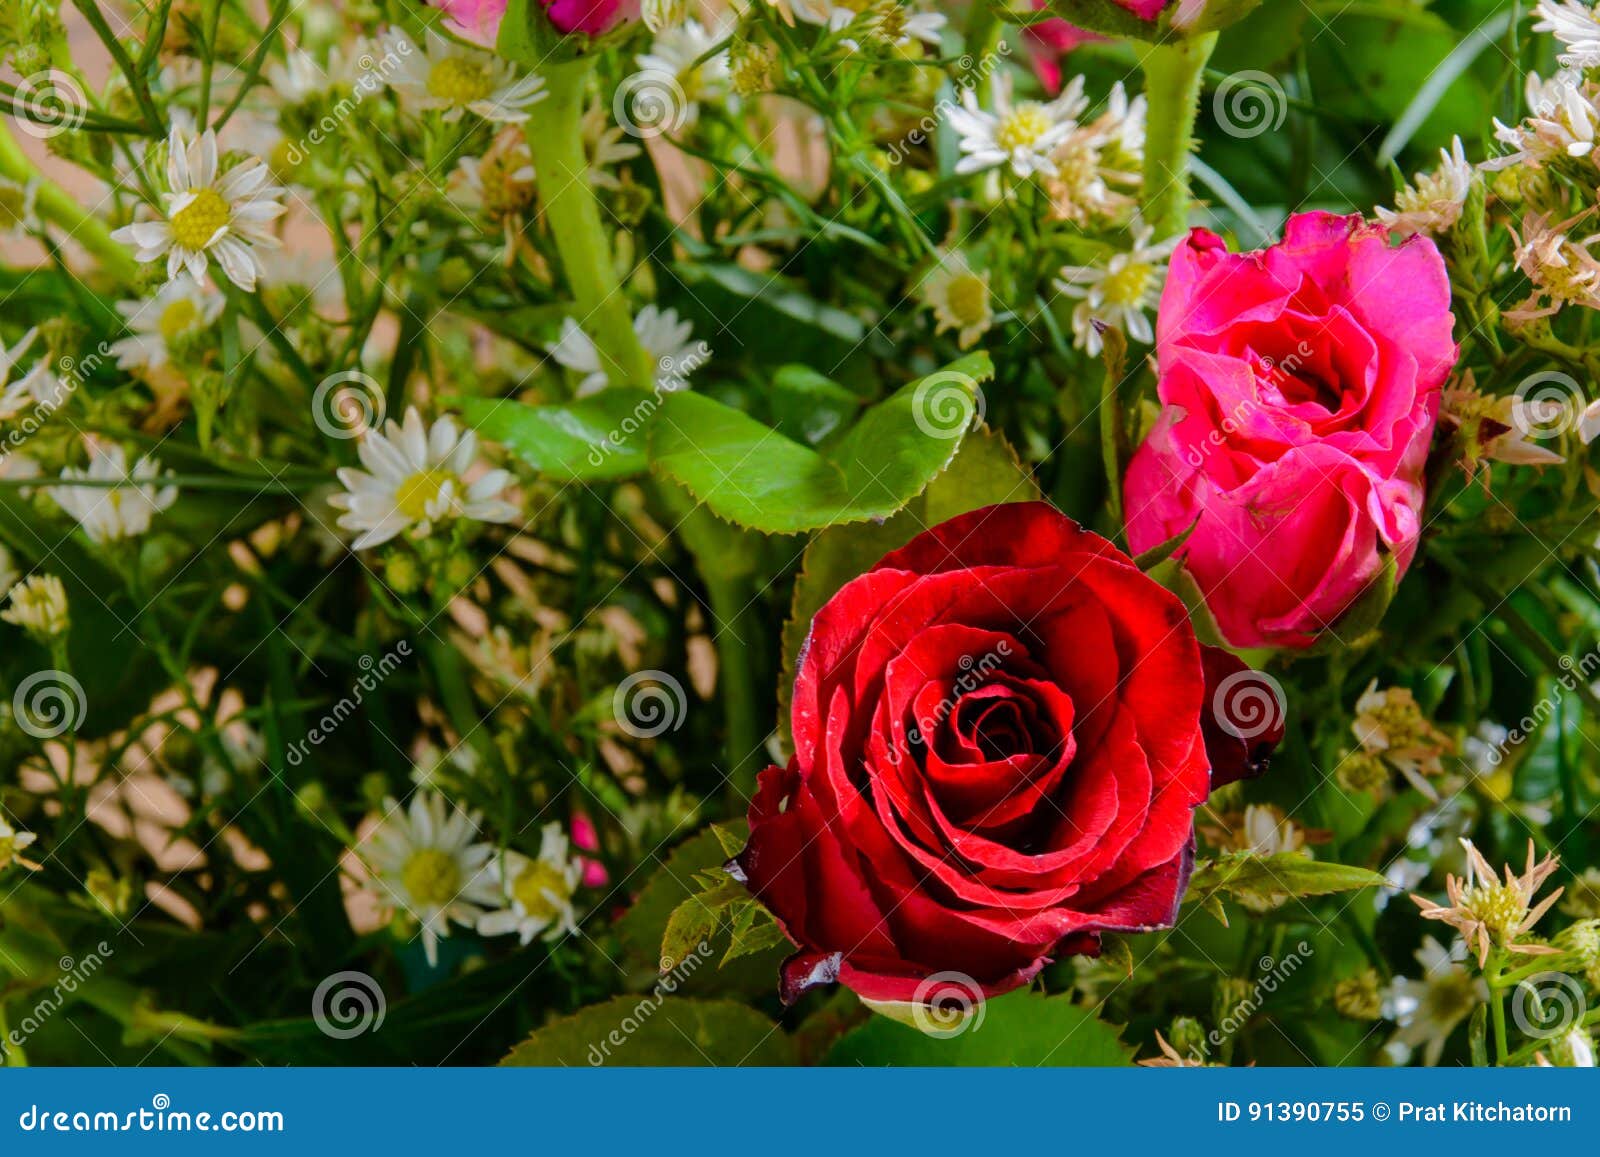 red rose vase